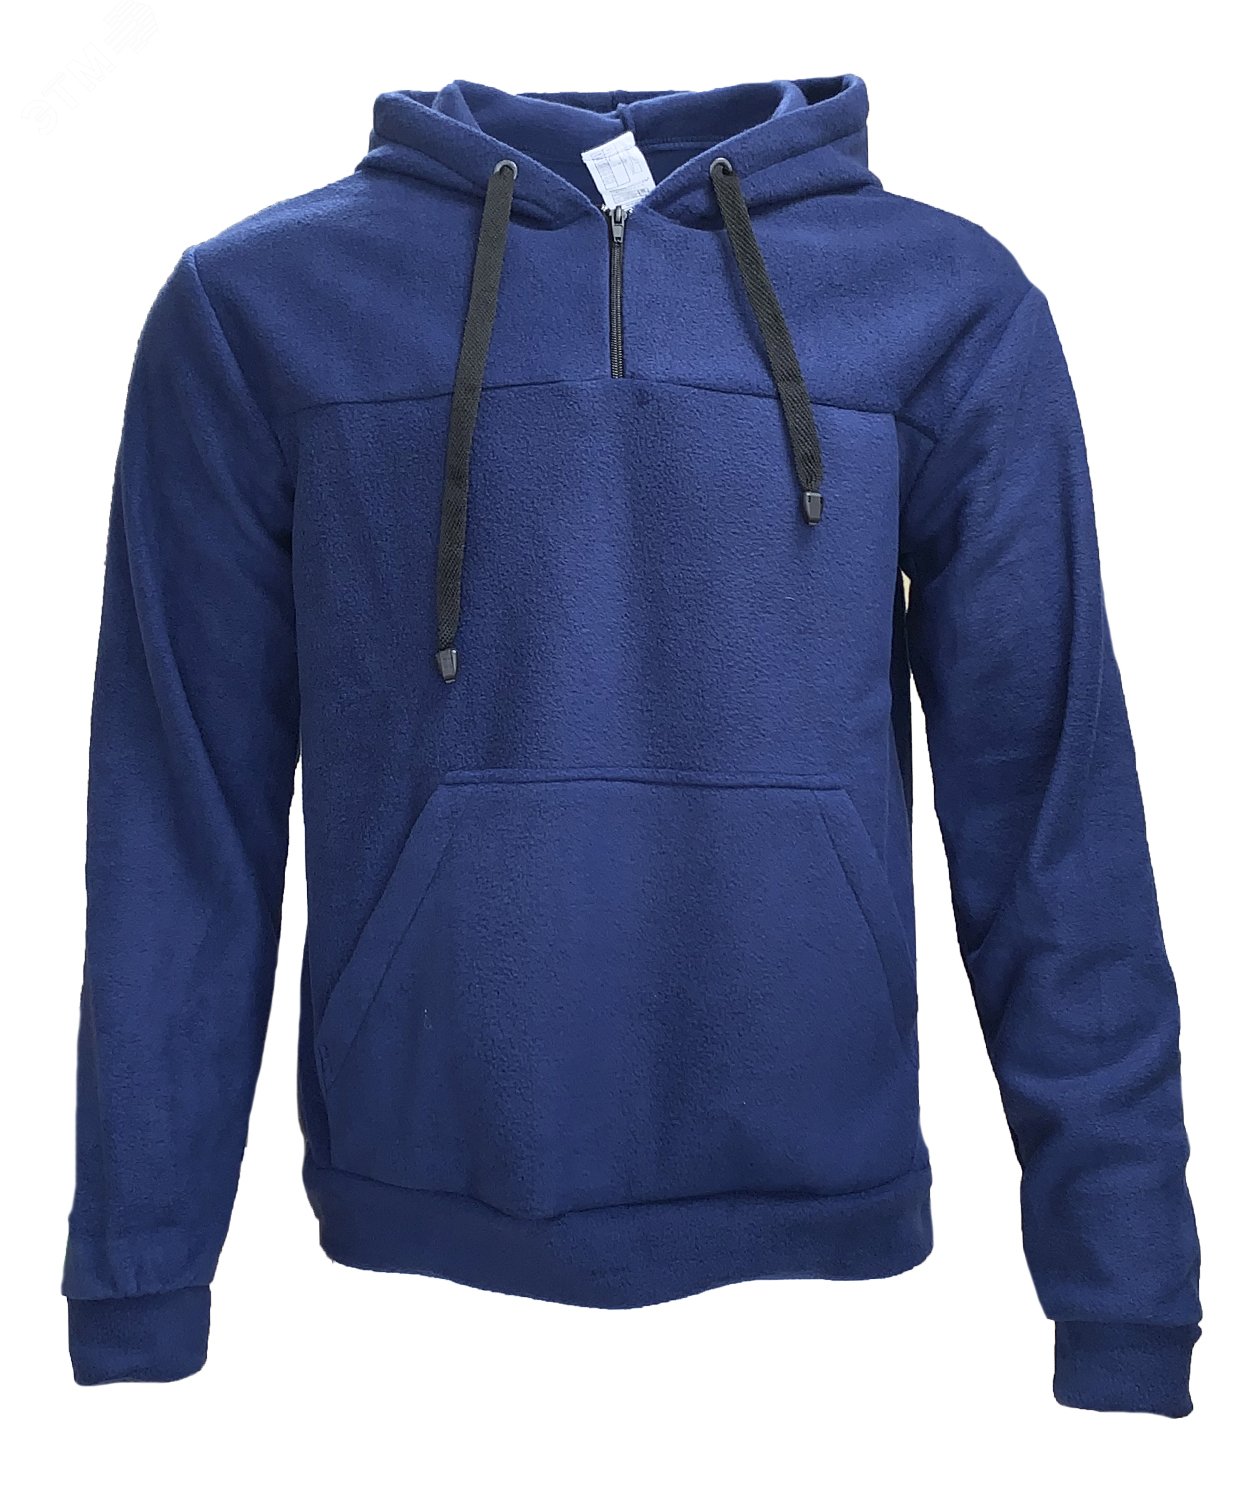 Куртка Etalon Travel TM Sprut с капюшоном, цвет темно-синий 56-58 112-116/182-188 130793 Эталон-Спецодежда - превью